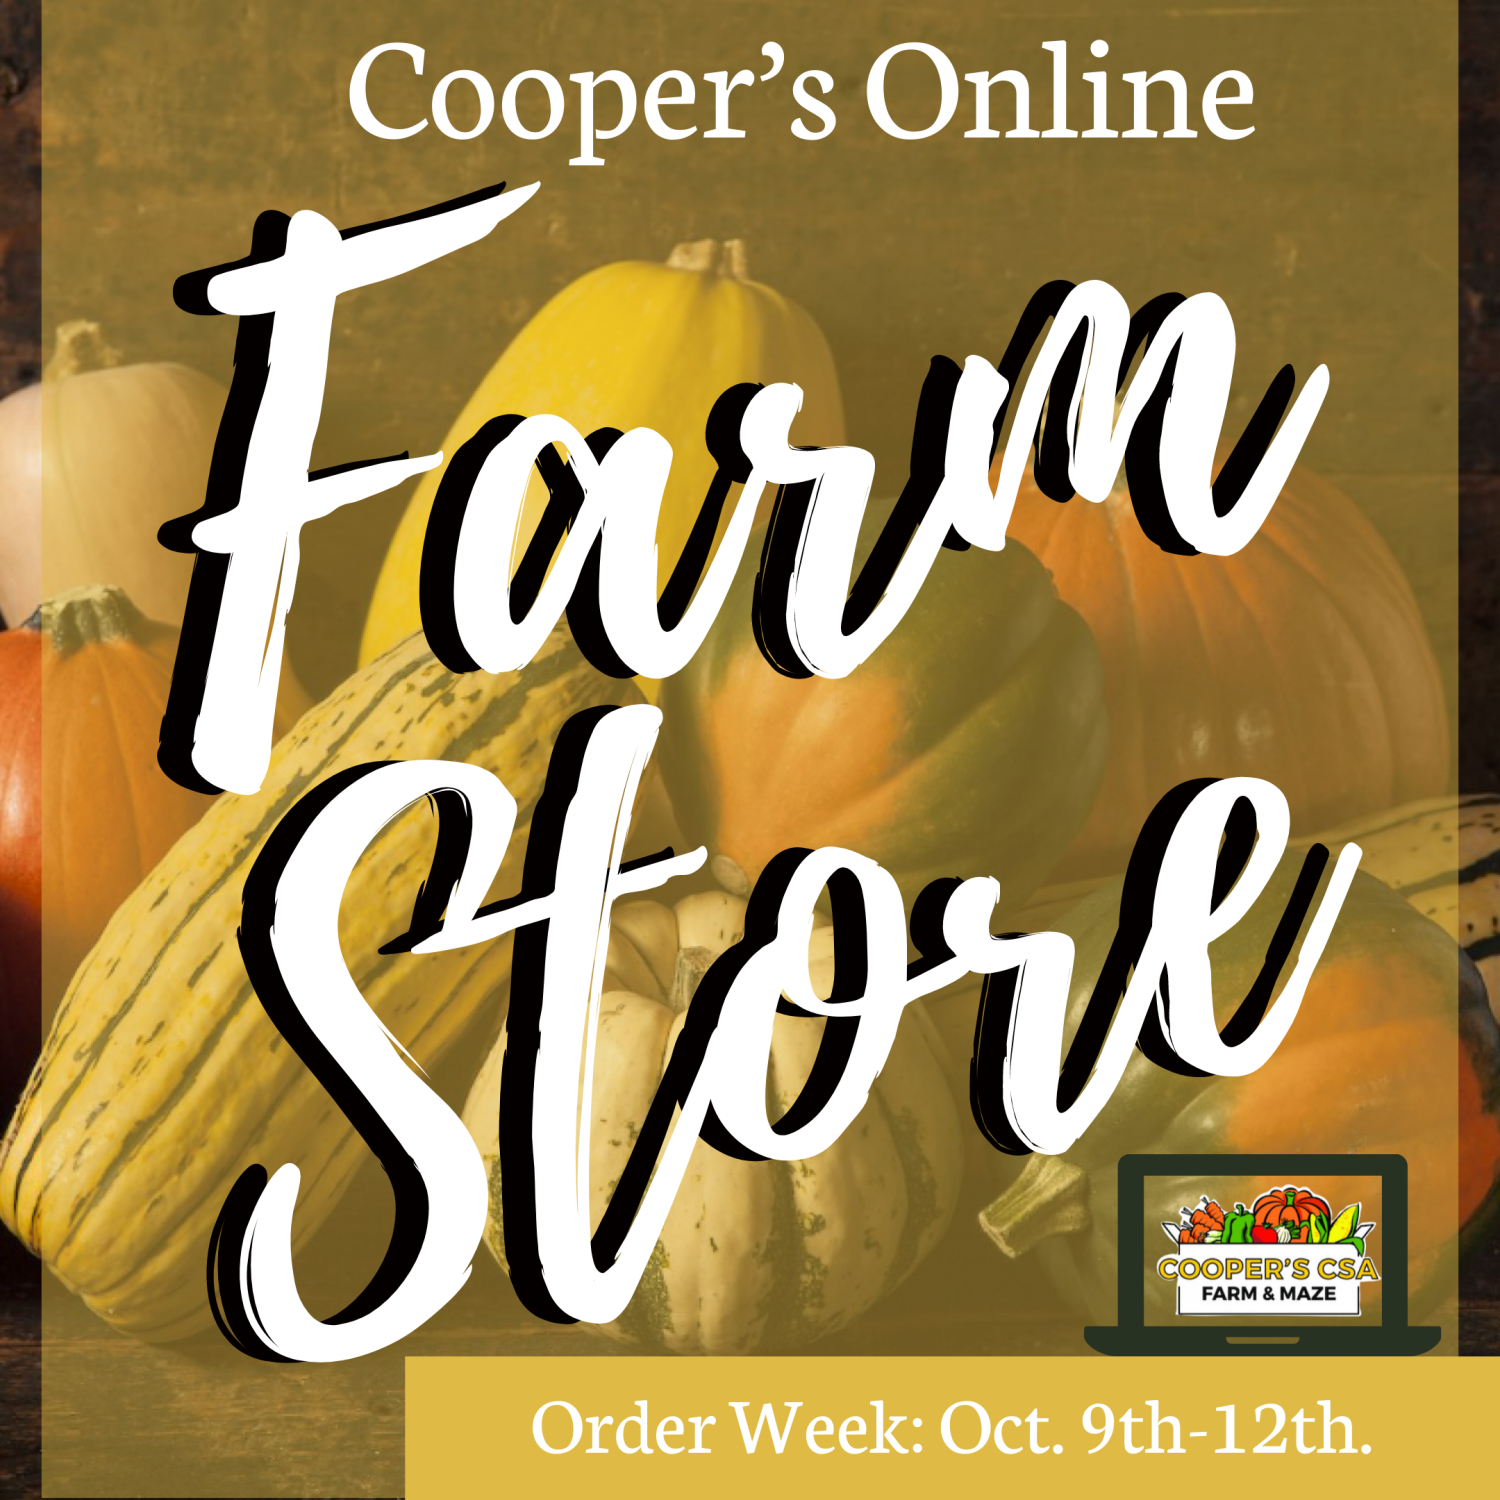 Coopers CSA Online FarmStore- Order Week 19